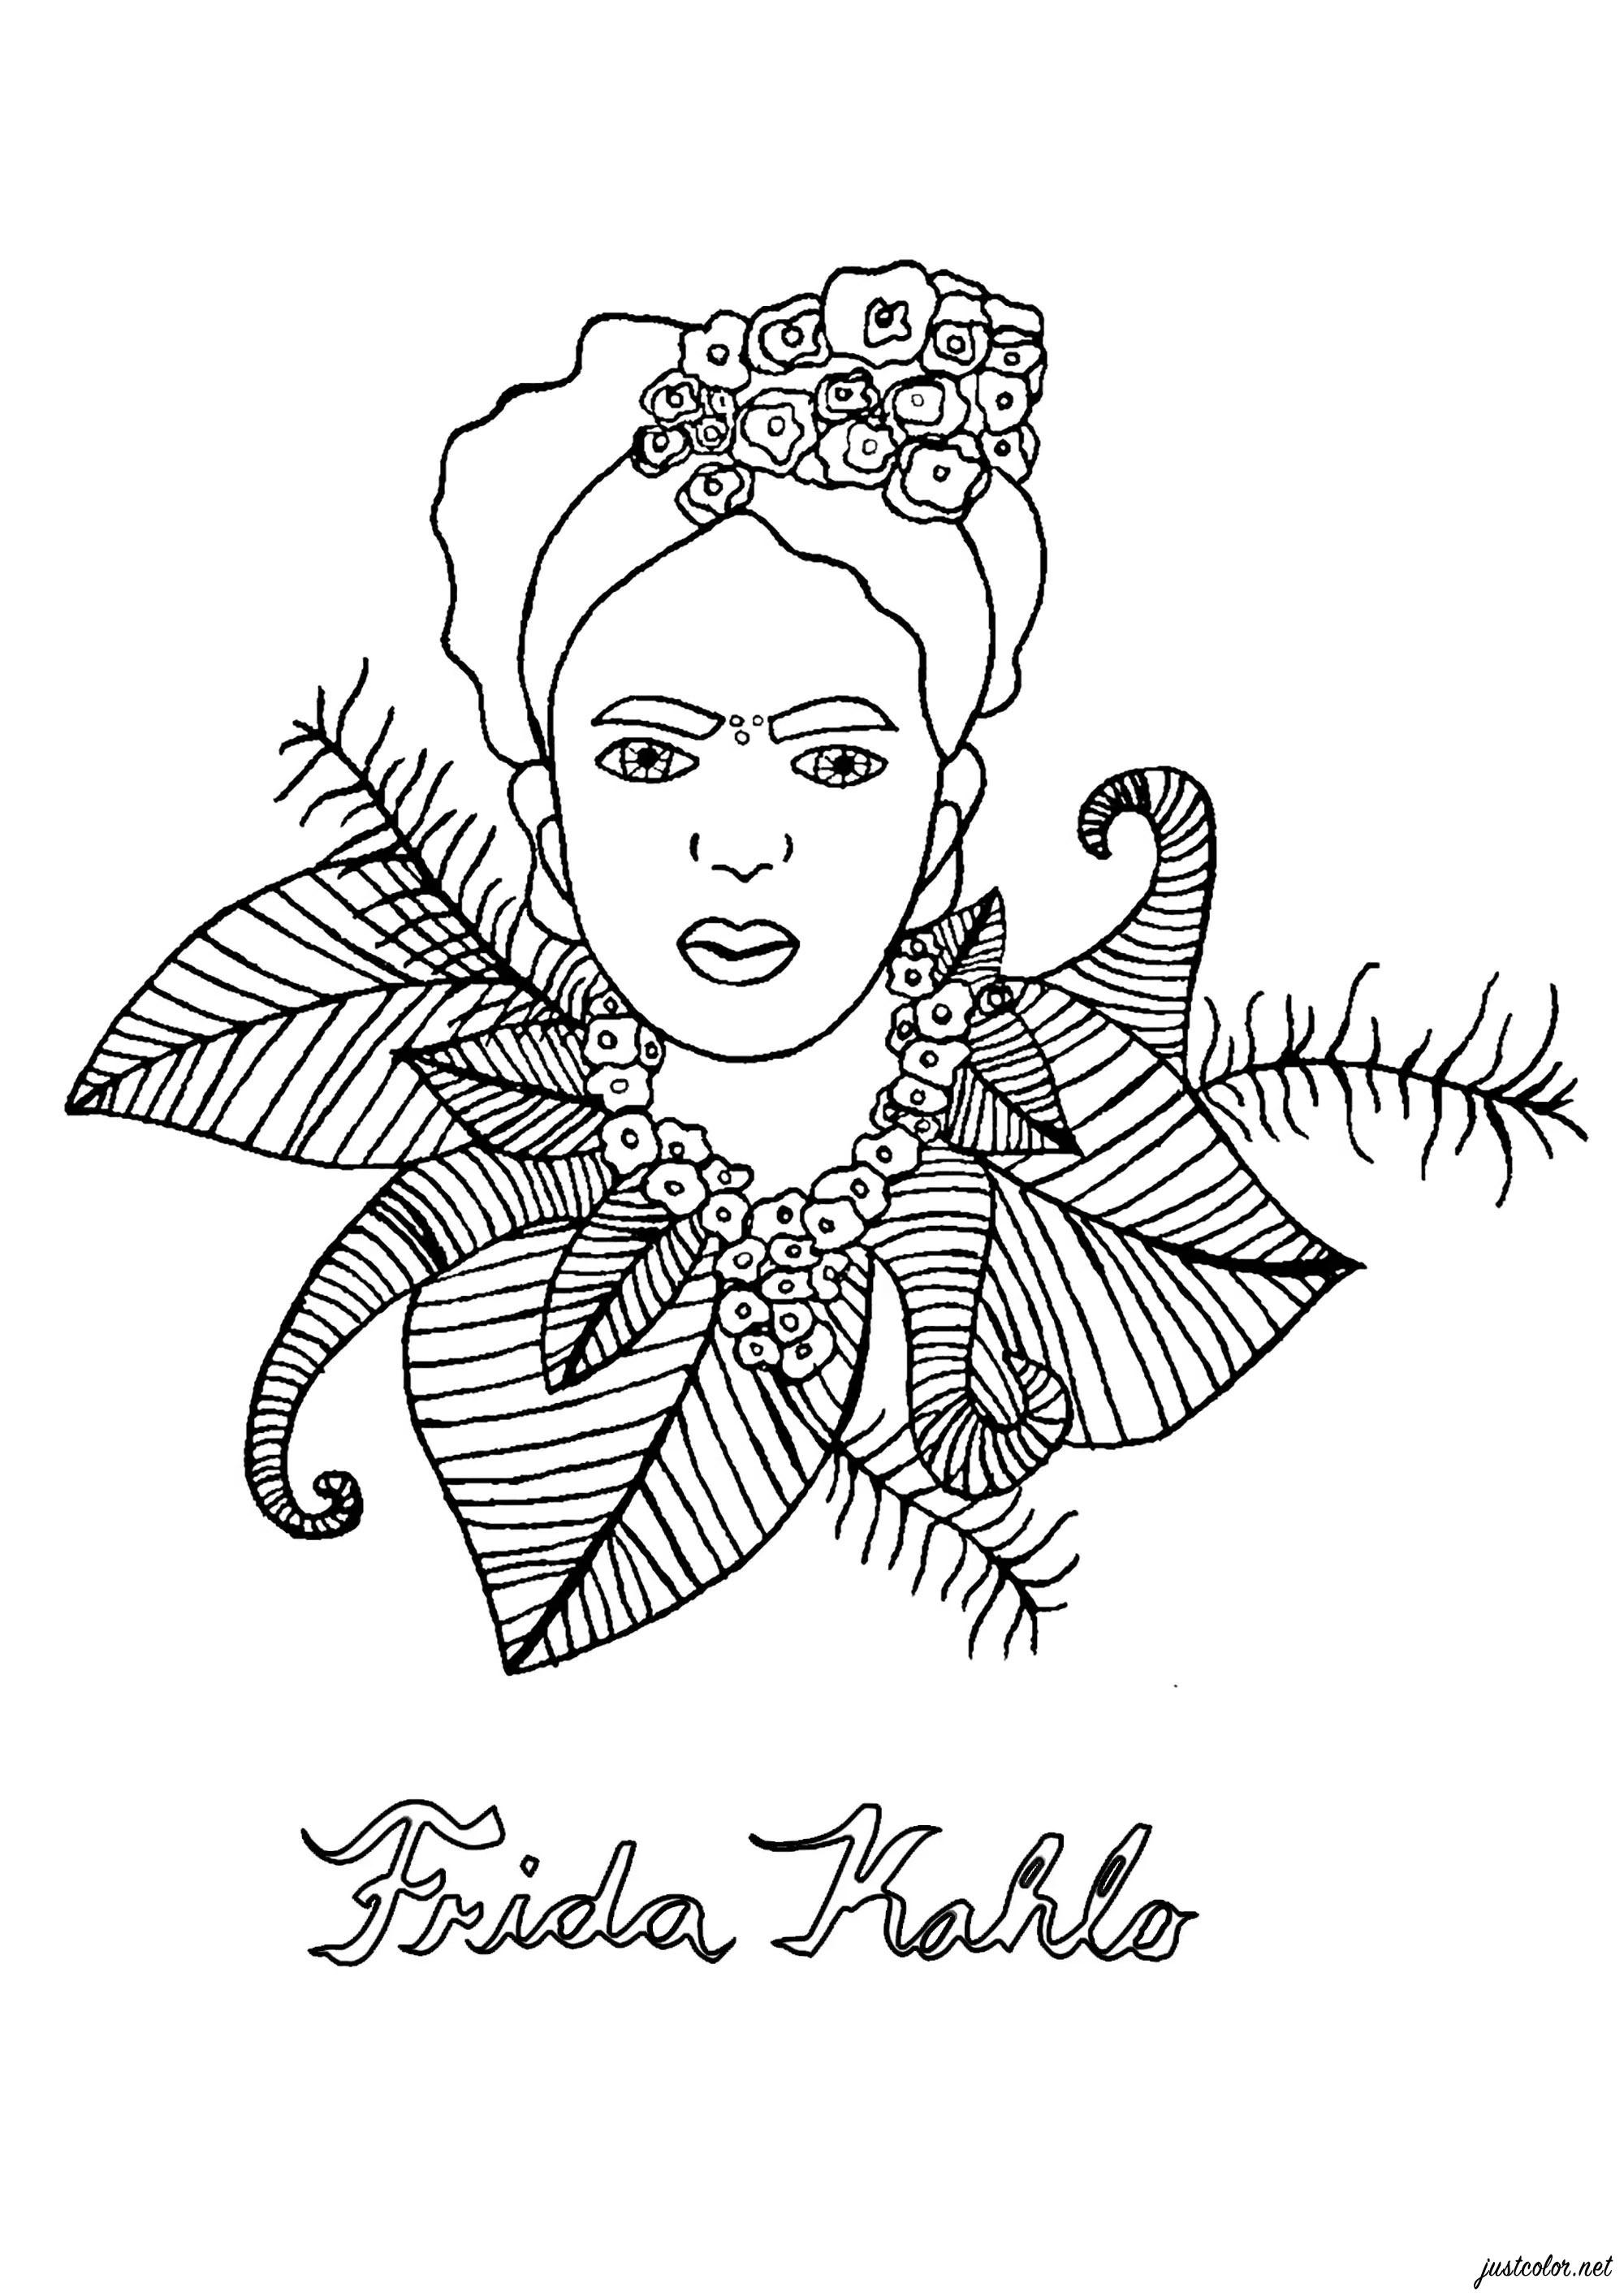 Coloreado del rostro de Frida Kahlo rodeado de hojas. Esta página para colorear es perfecta para los niños amantes del dibujo y de la cultura mexicana. Es un retrato de la famosa artista Frida Kahlo, rodeada de hojas que te recomendamos colorear en un verde intenso y brillante.